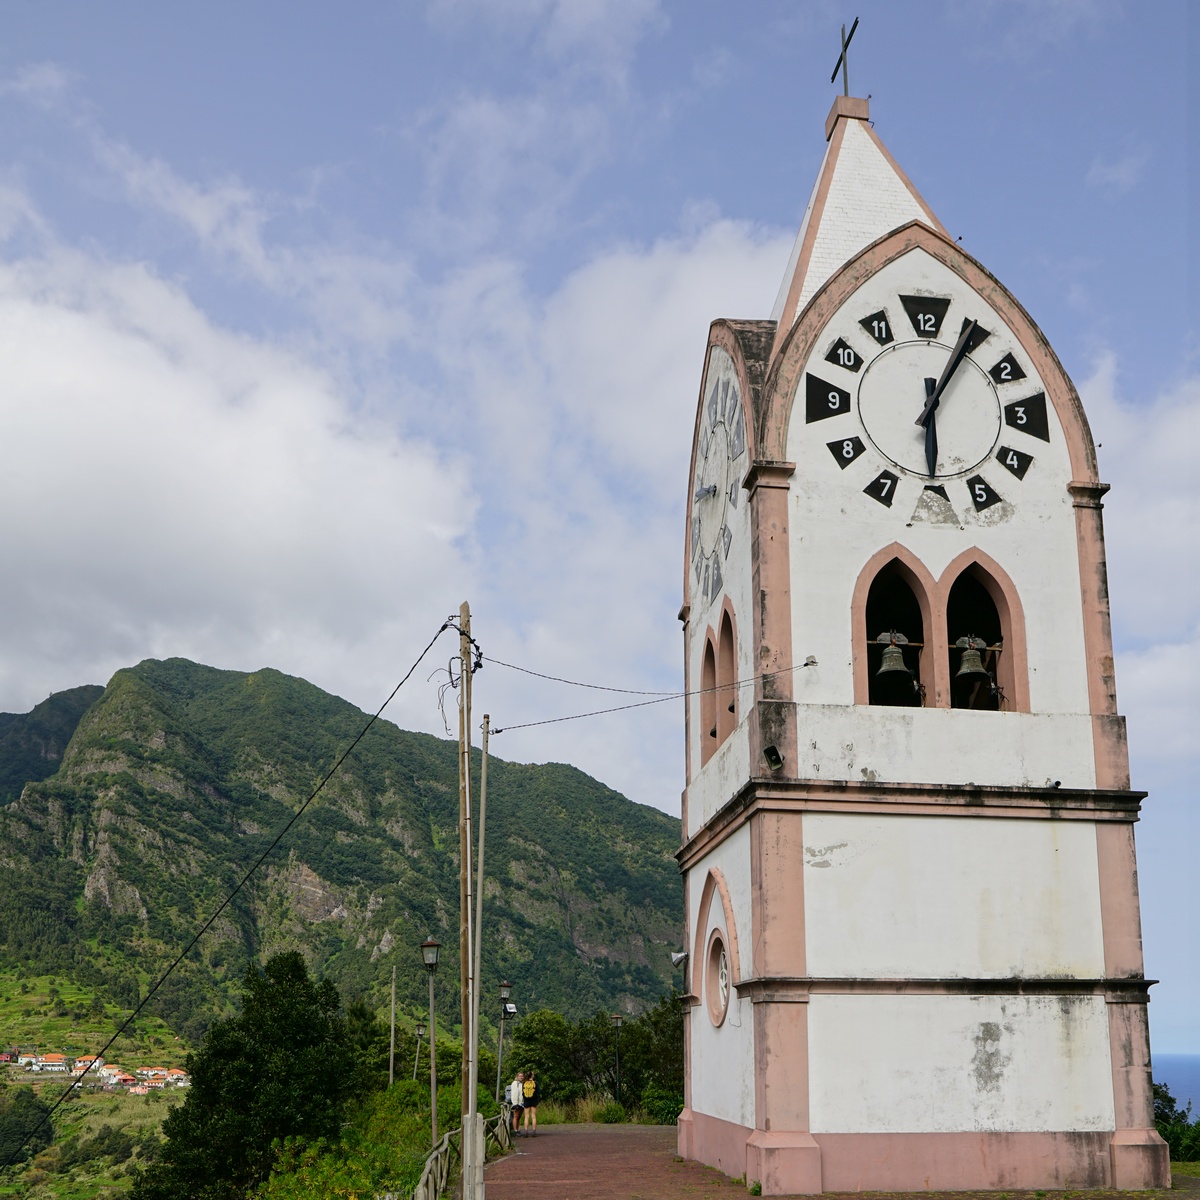 Capelinha de Nossa Senhora de Fátima in São Vicente